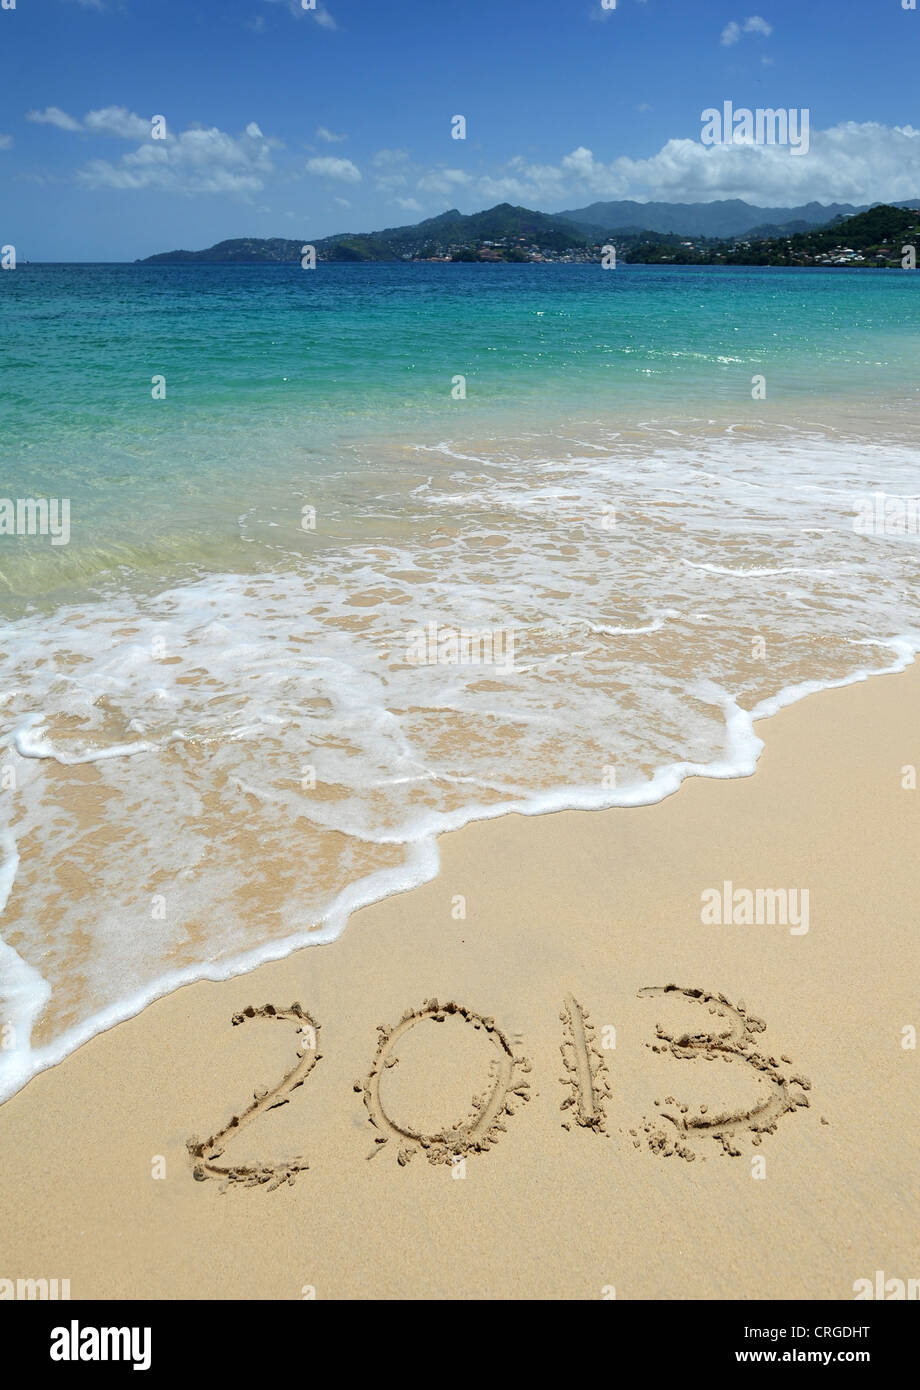 2013 écrit dans le sable sur la plage de Grand'Anse à la direction de St George's, la capitale de la Grenade, dans les Antilles. Banque D'Images